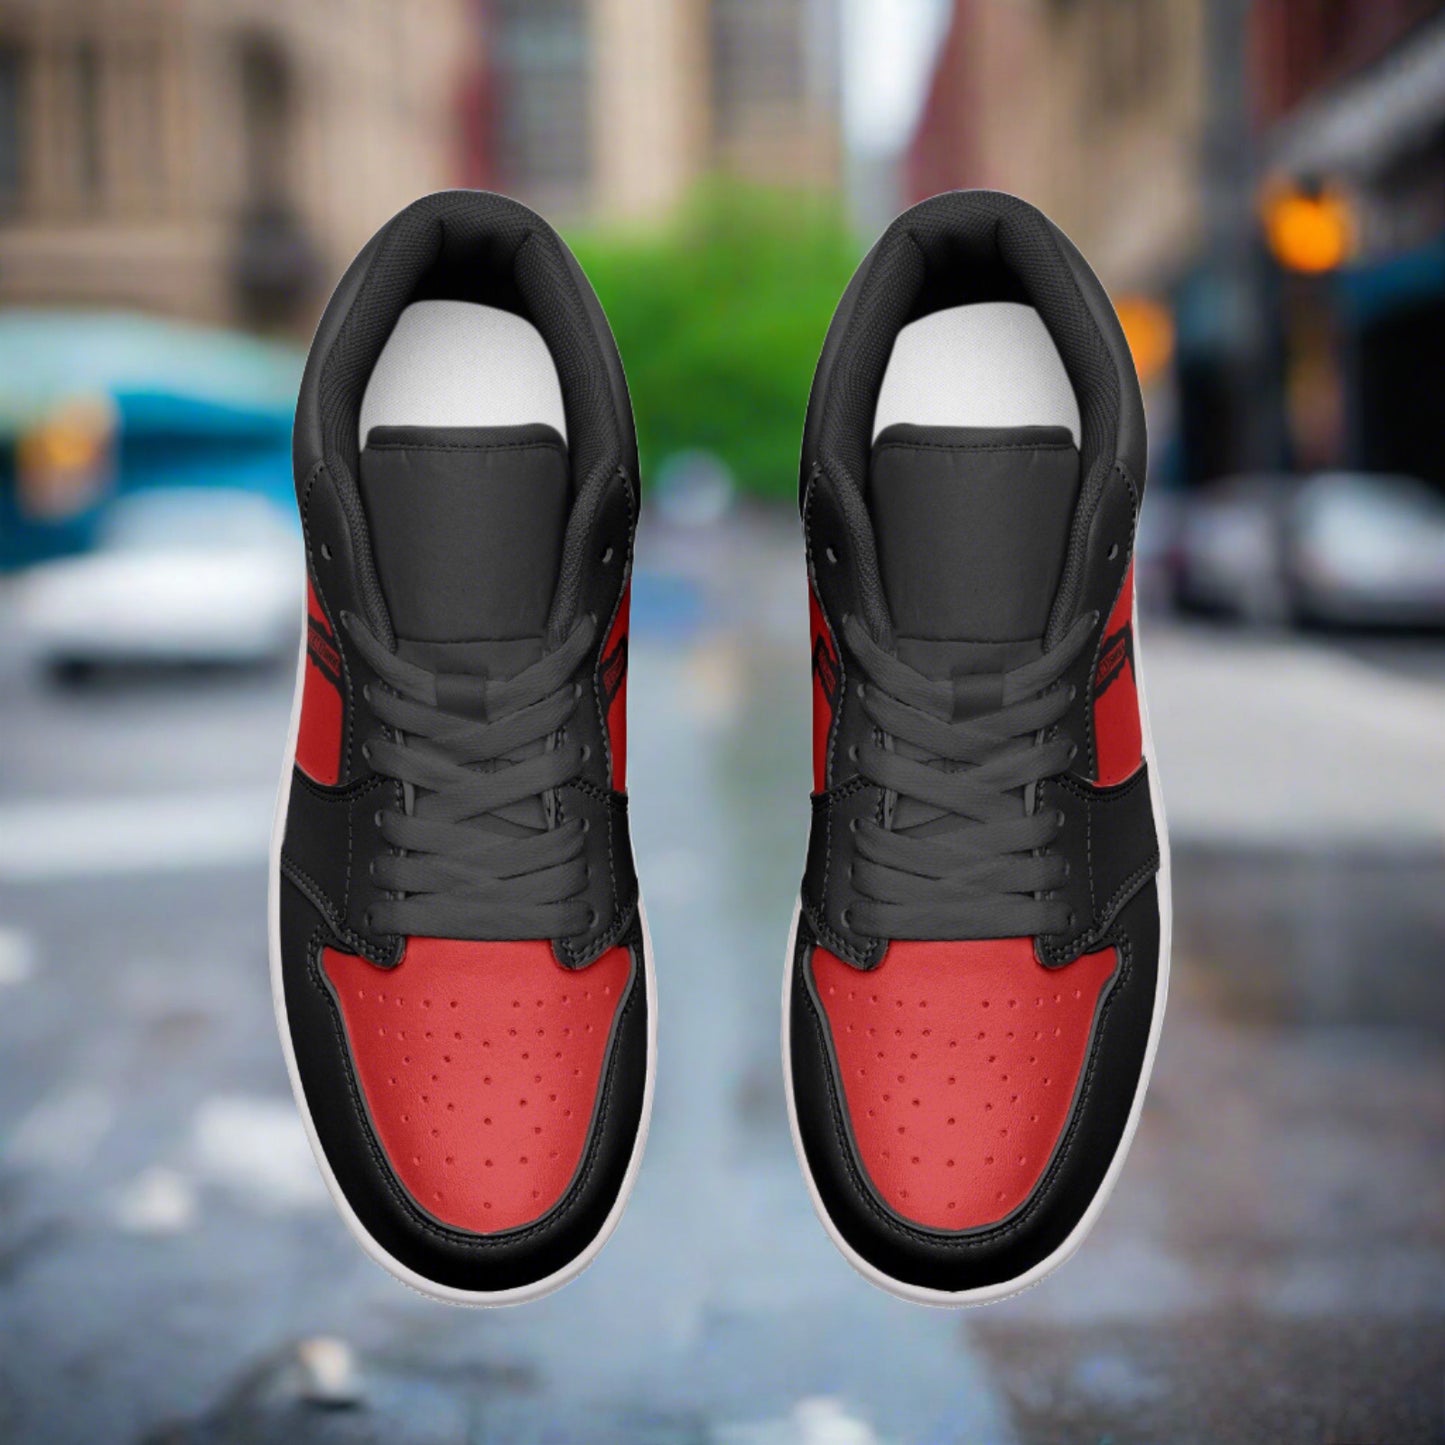 Freaky Shoes® Zapatillas bajas unisex de cuero en rojo y negro